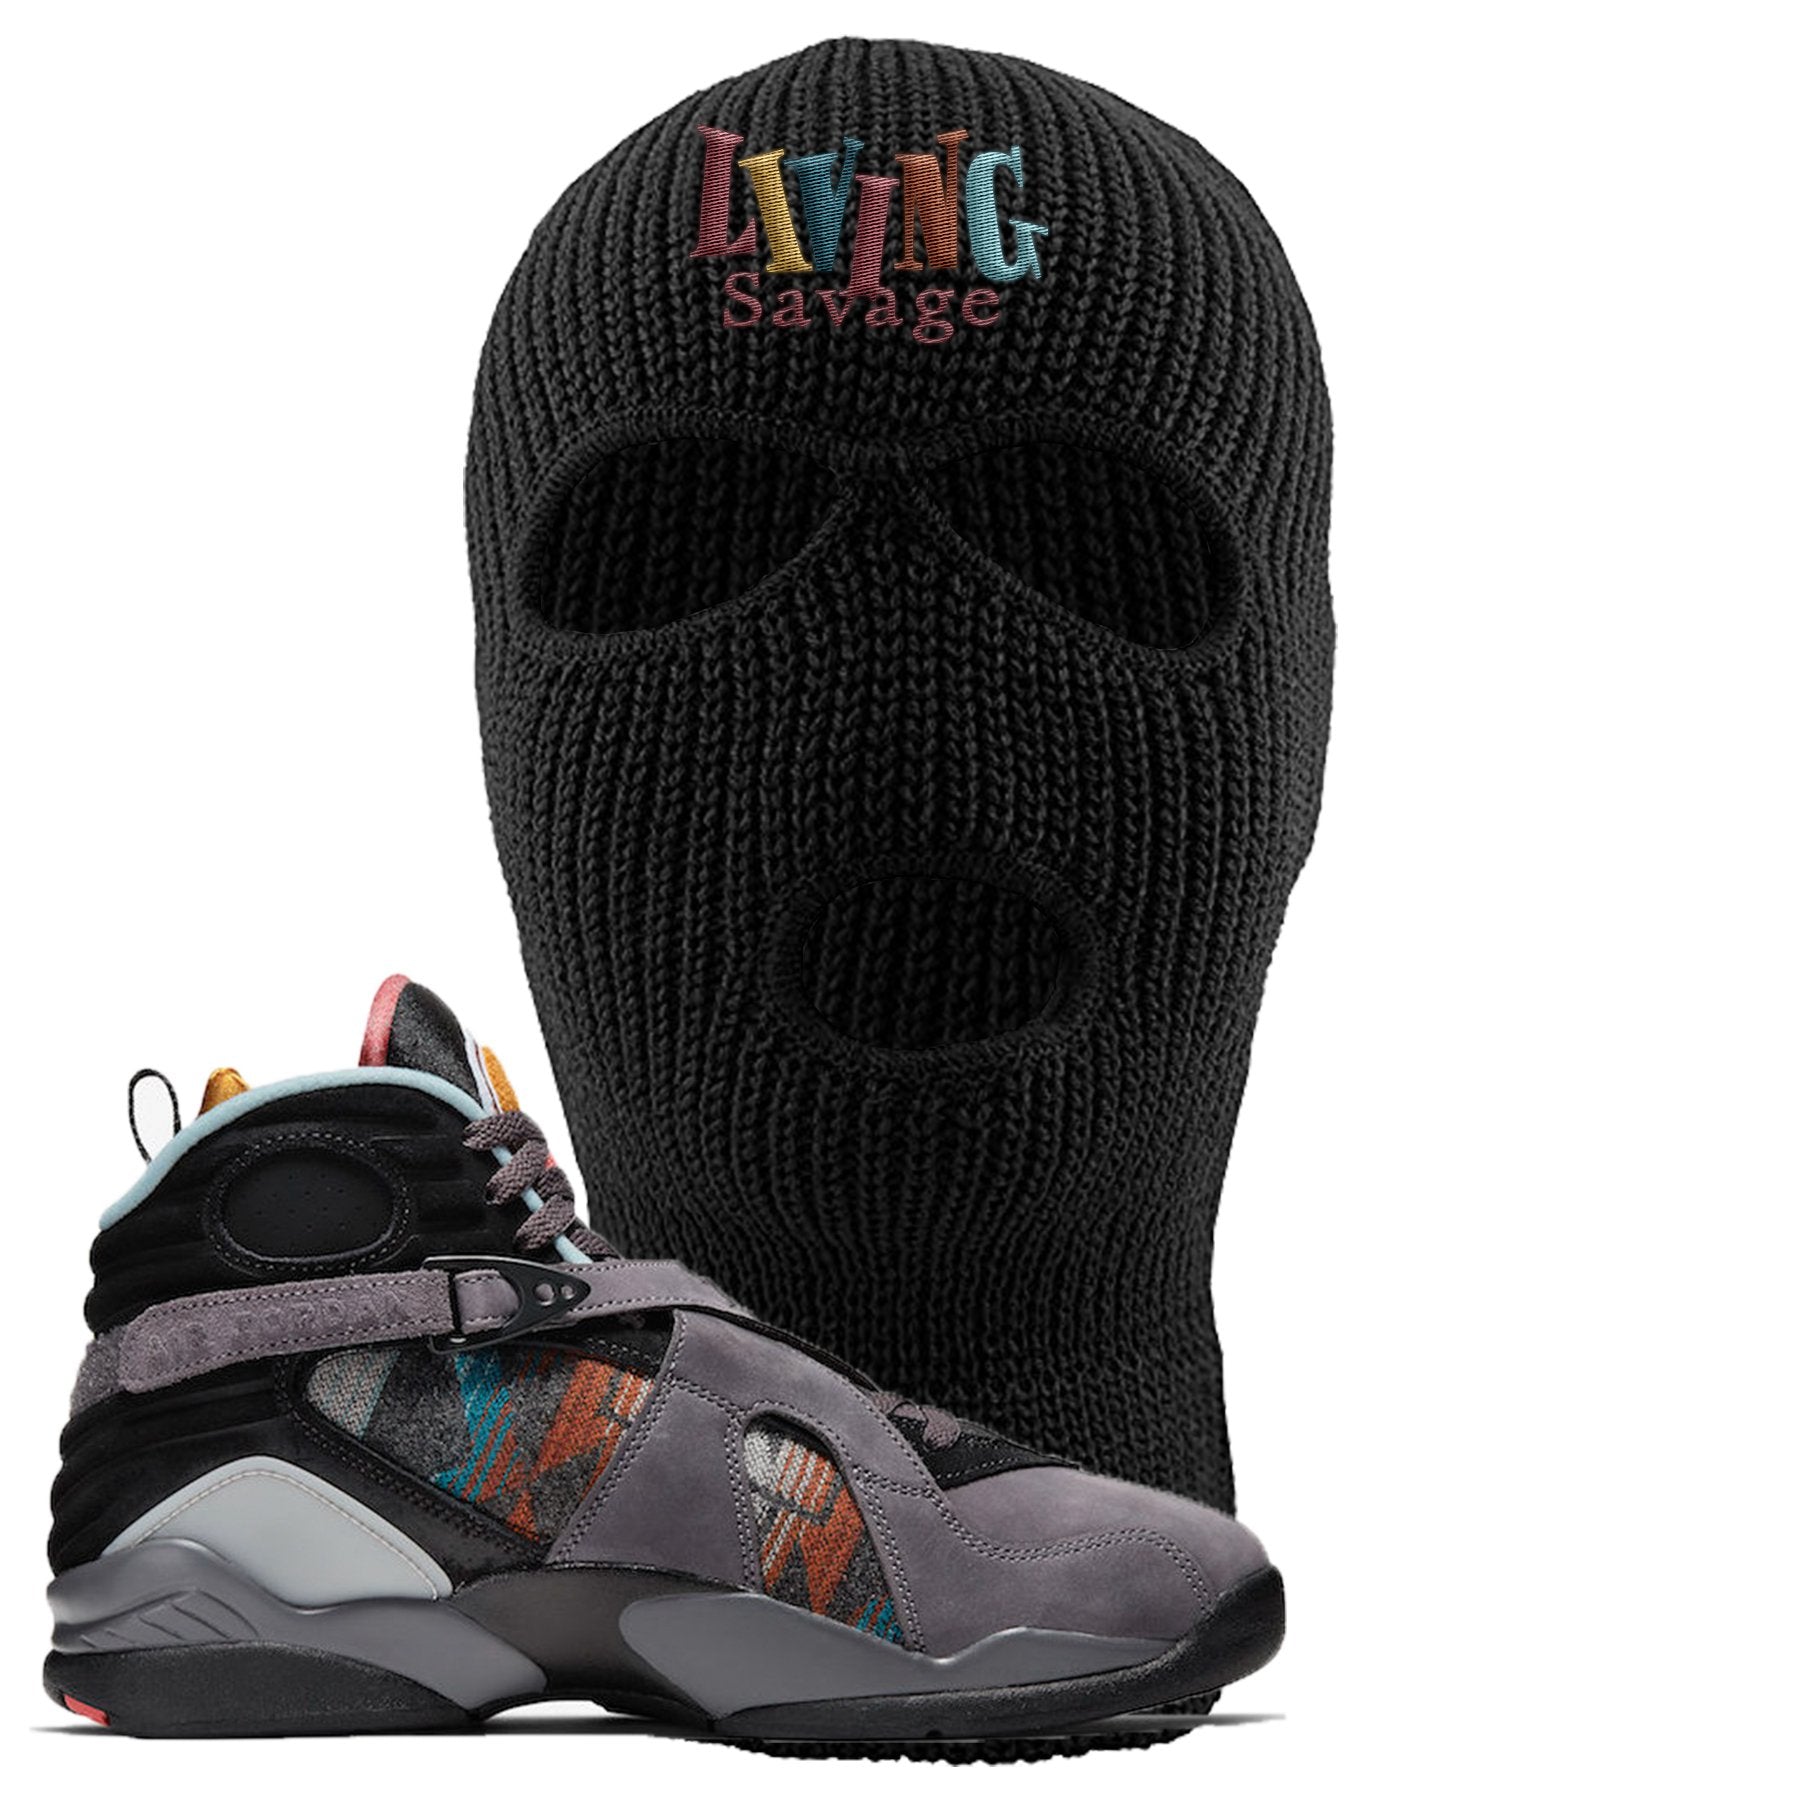 Jordan 8 N7 Pendleton Living Savage Black Sneaker Hook Up Ski Mask